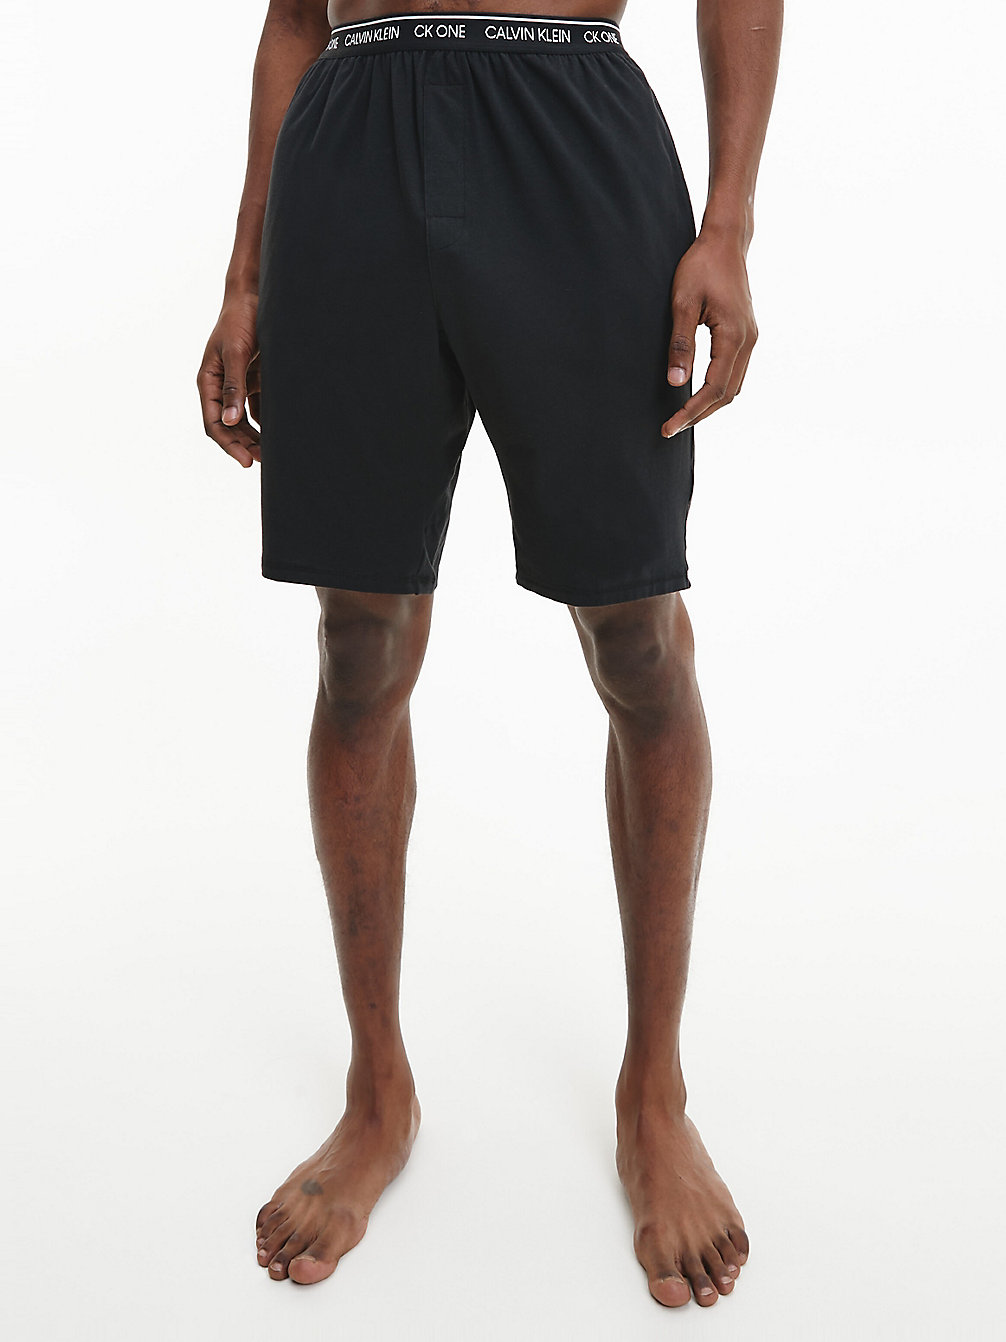 BLACK Lounge Shorts - CK One undefined men Calvin Klein